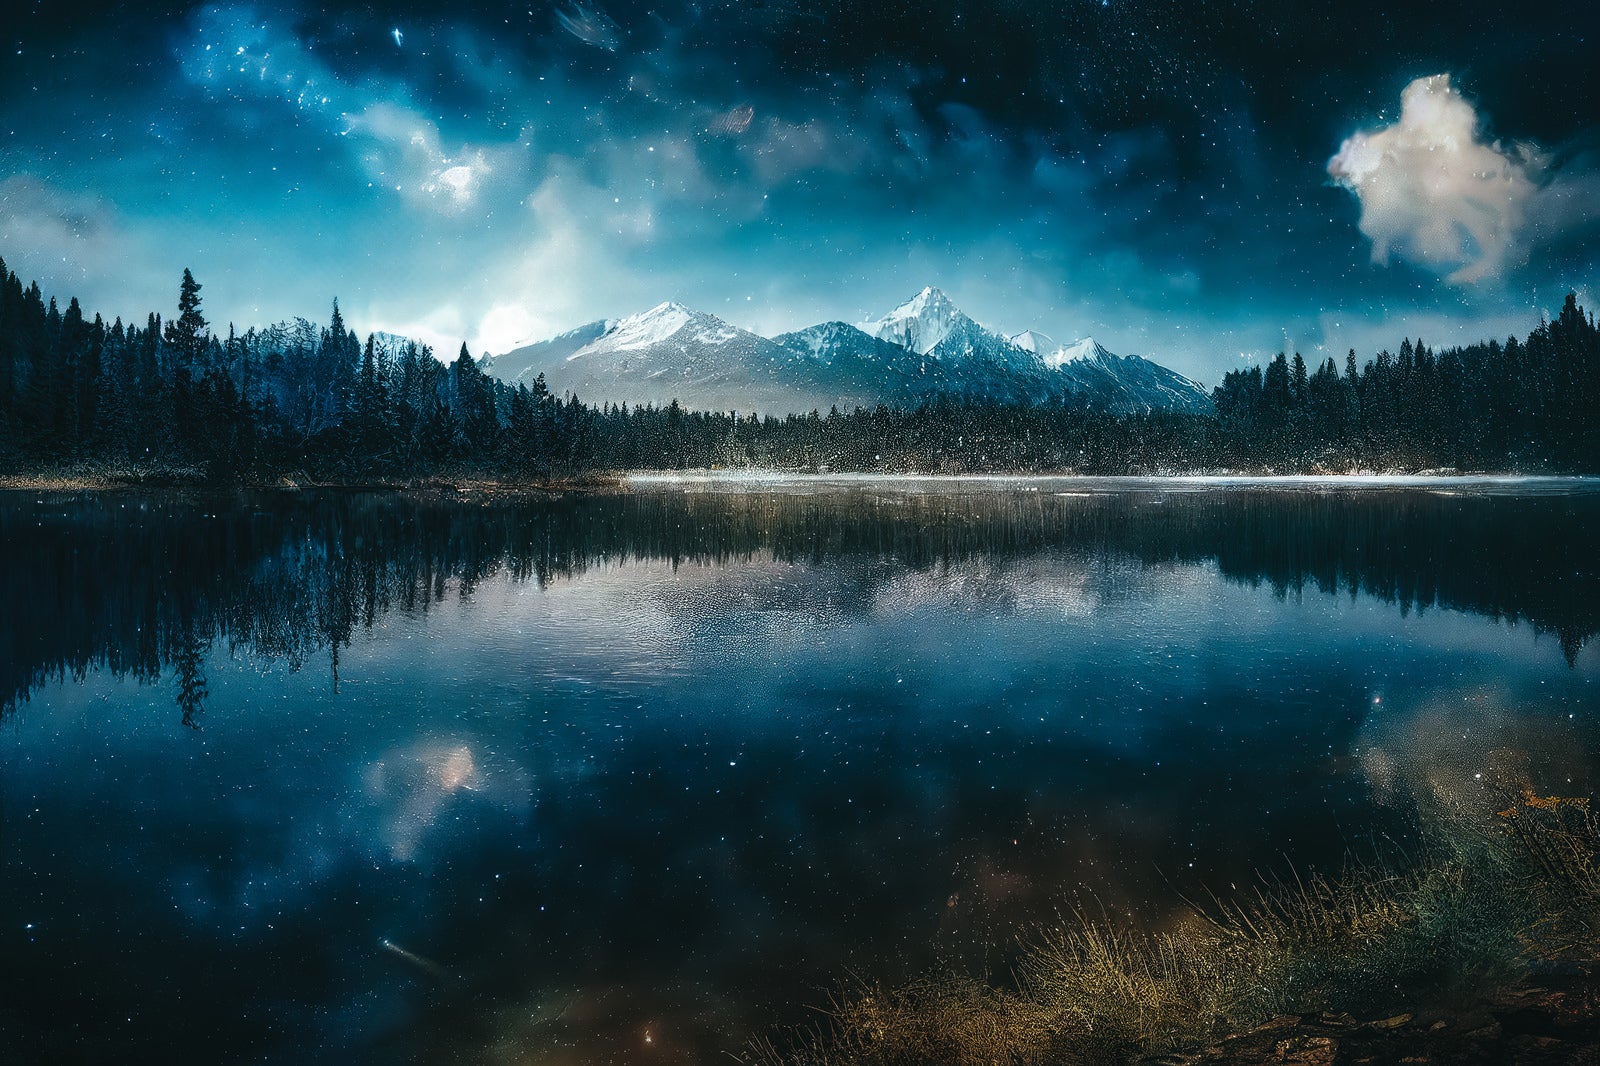 「湖面に映る星空」の写真